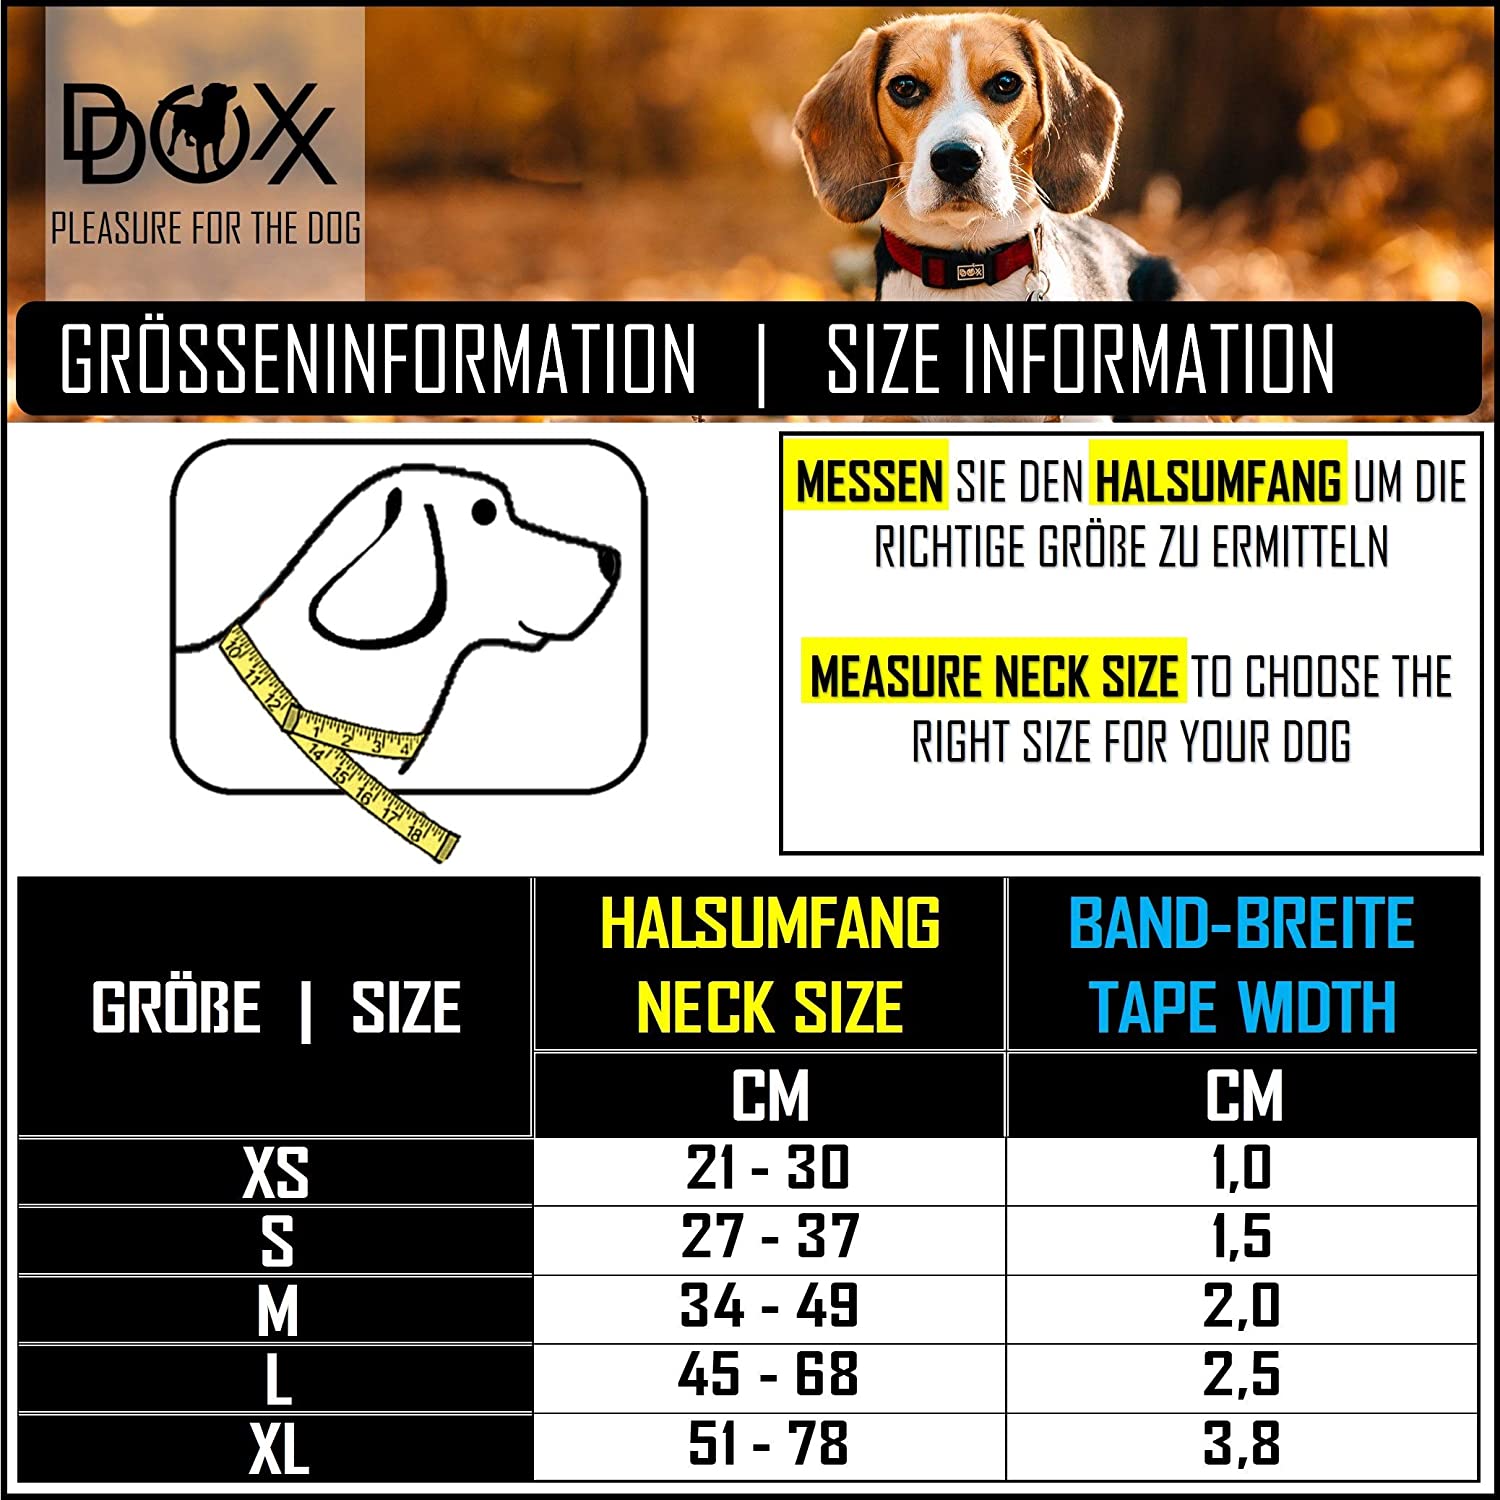  DDOXX Collar Perro Nylon, Ajustable | Diferentes Colores & Tamaños | para Perros Pequeño, Mediano y Grande | Collares Accesorios Gato Cachorro | Negro, XS 